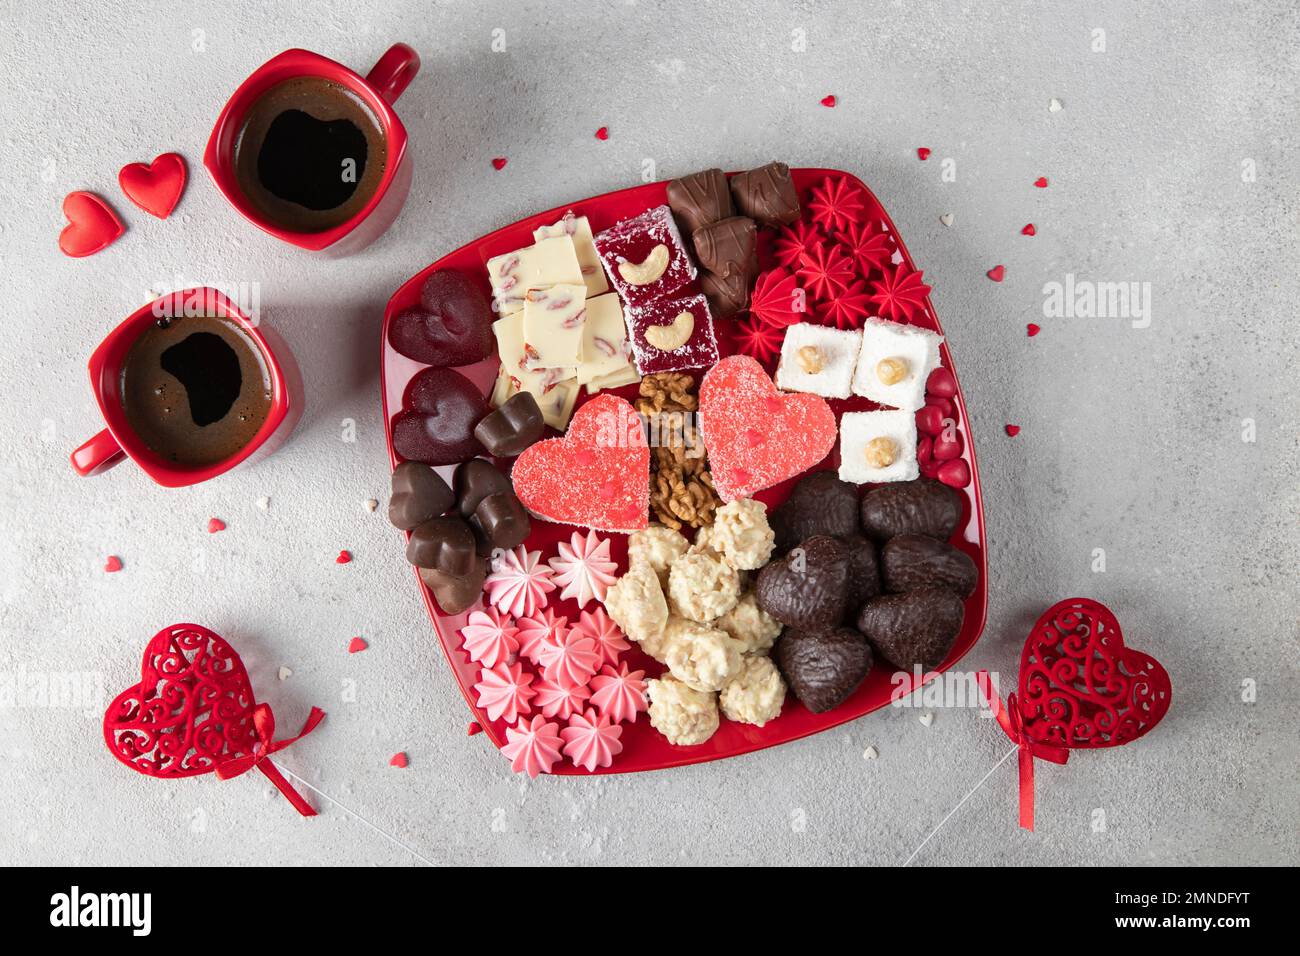 Süßer romantischer Teller mit Süßigkeiten, Schokolade, Nüssen, Baiser, türkischem Honig und Kaffee für zwei am Valentinstag auf grauem Hintergrund Stockfoto